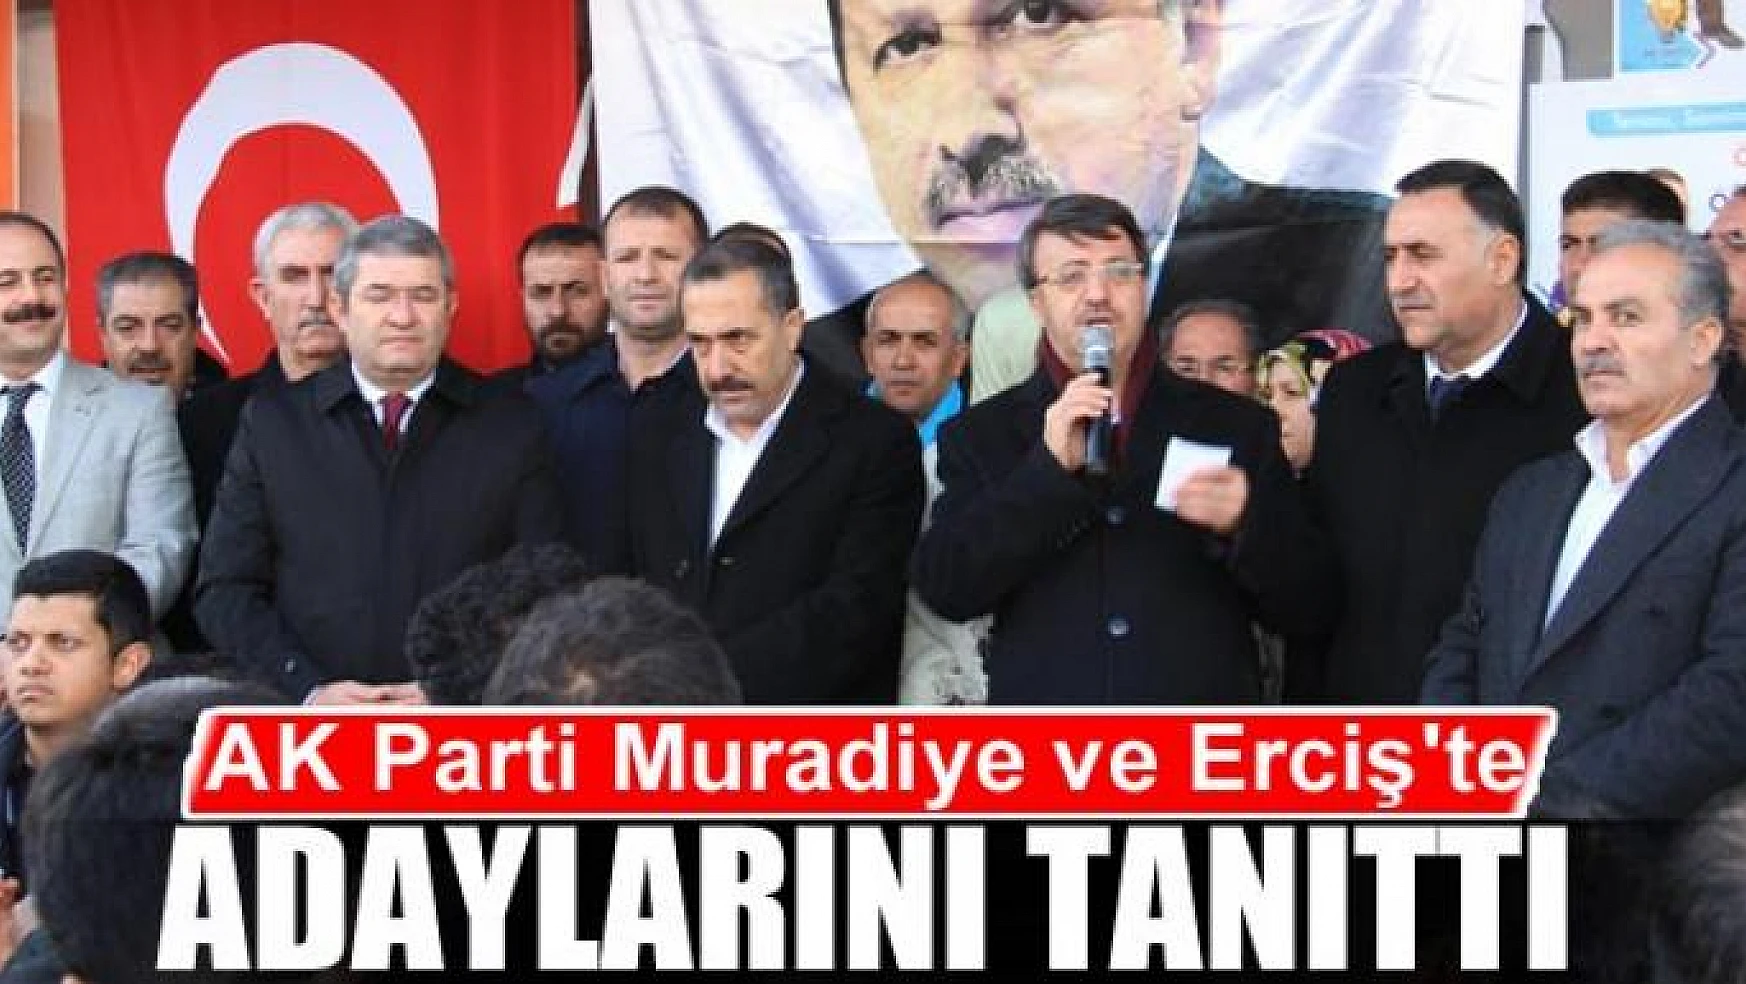 AK Parti Muradiye ve Erciş'te adaylarını tanıttı 